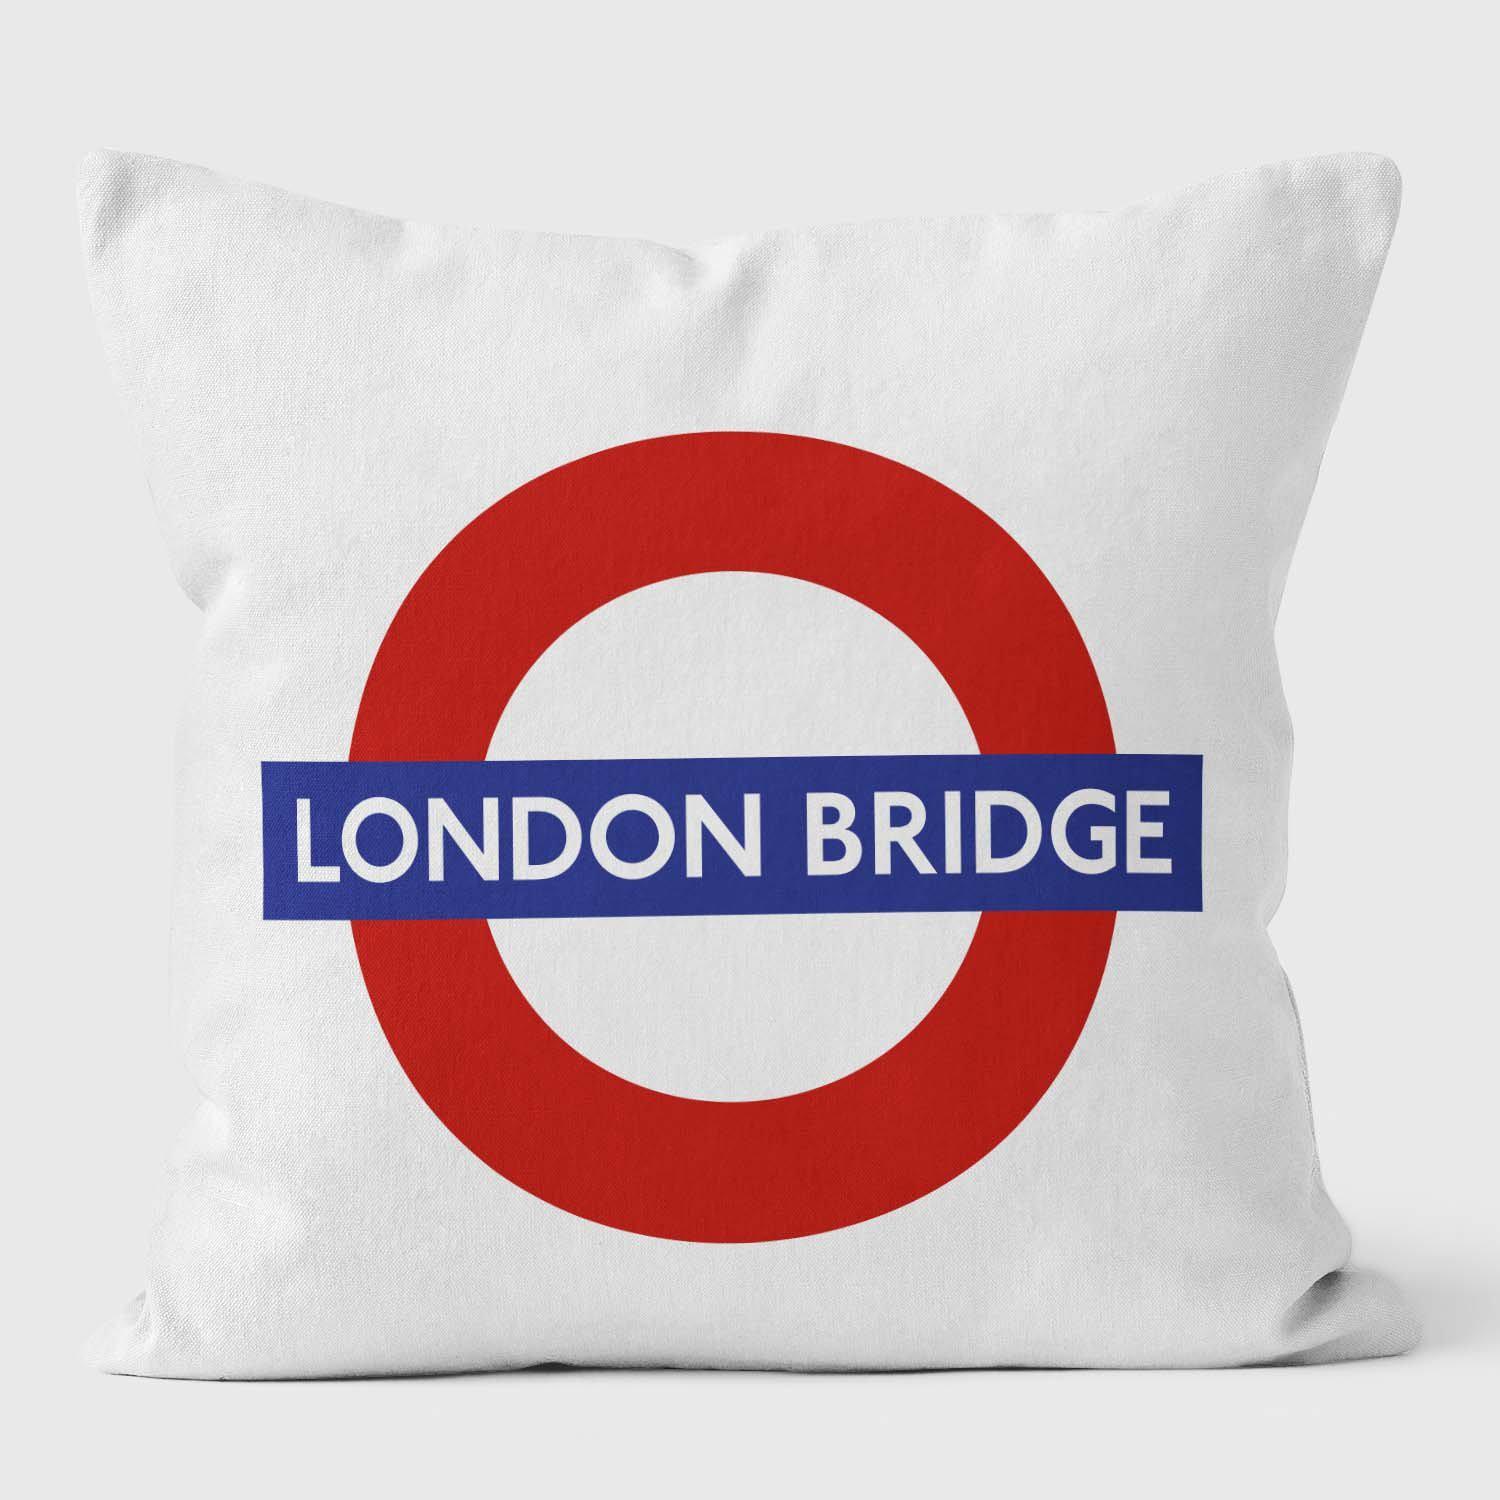 London Bridge London Underground Tube Station Roundel Cushion - Handmade Cushions UK - WeLoveCushions